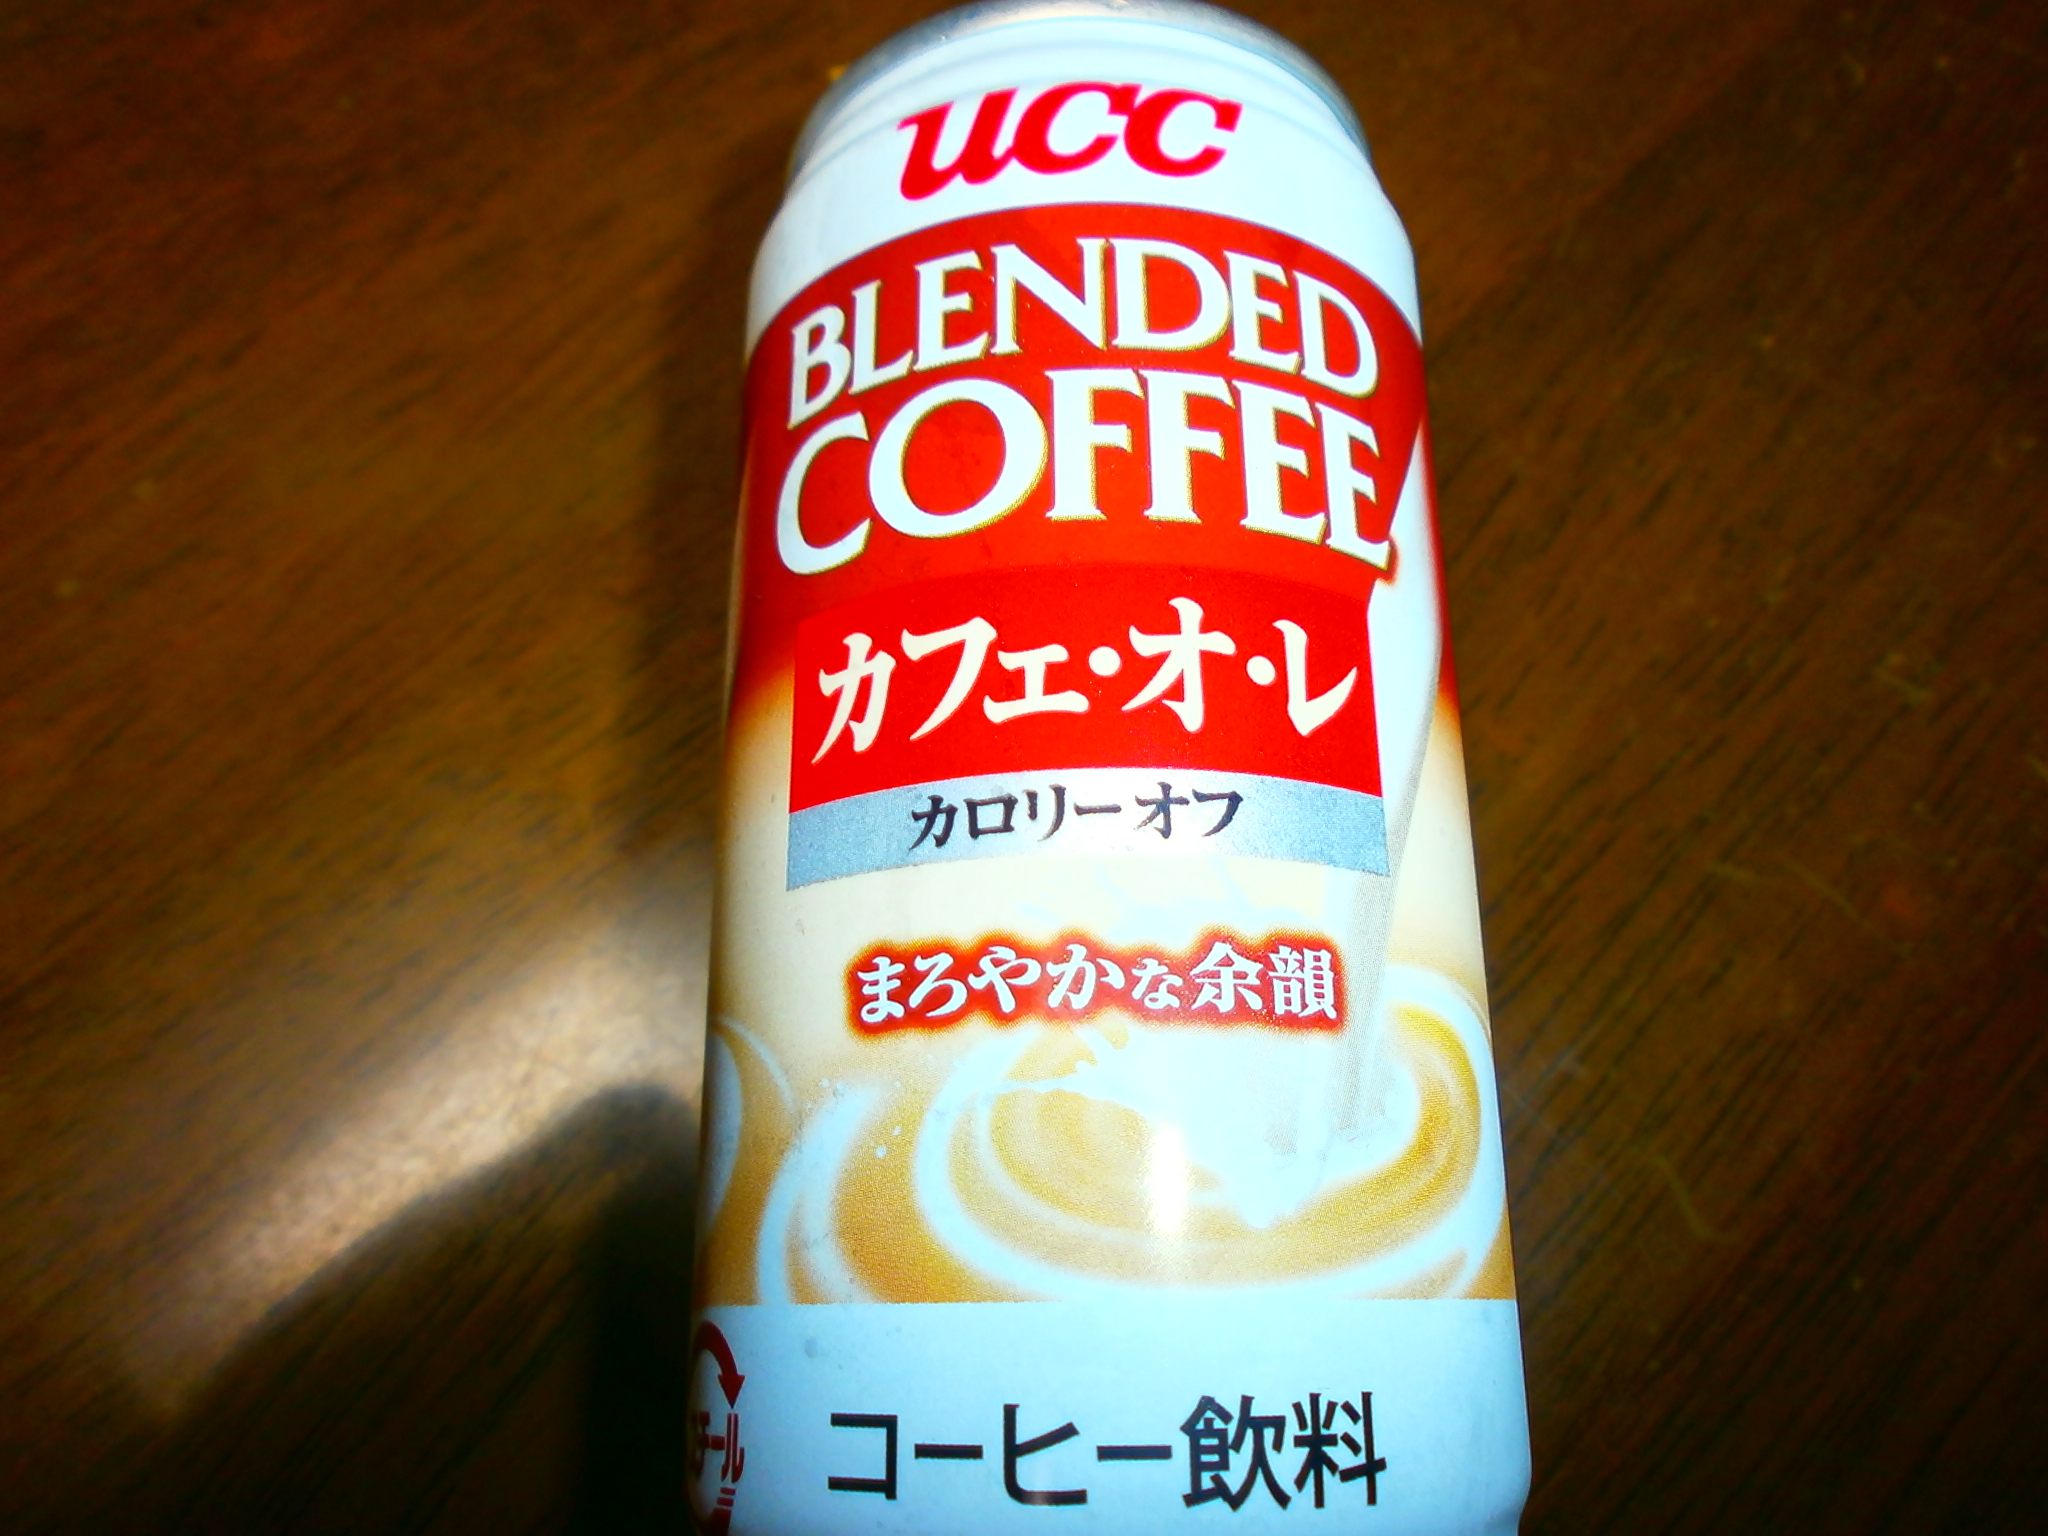 Café au lait calories off (UCC)